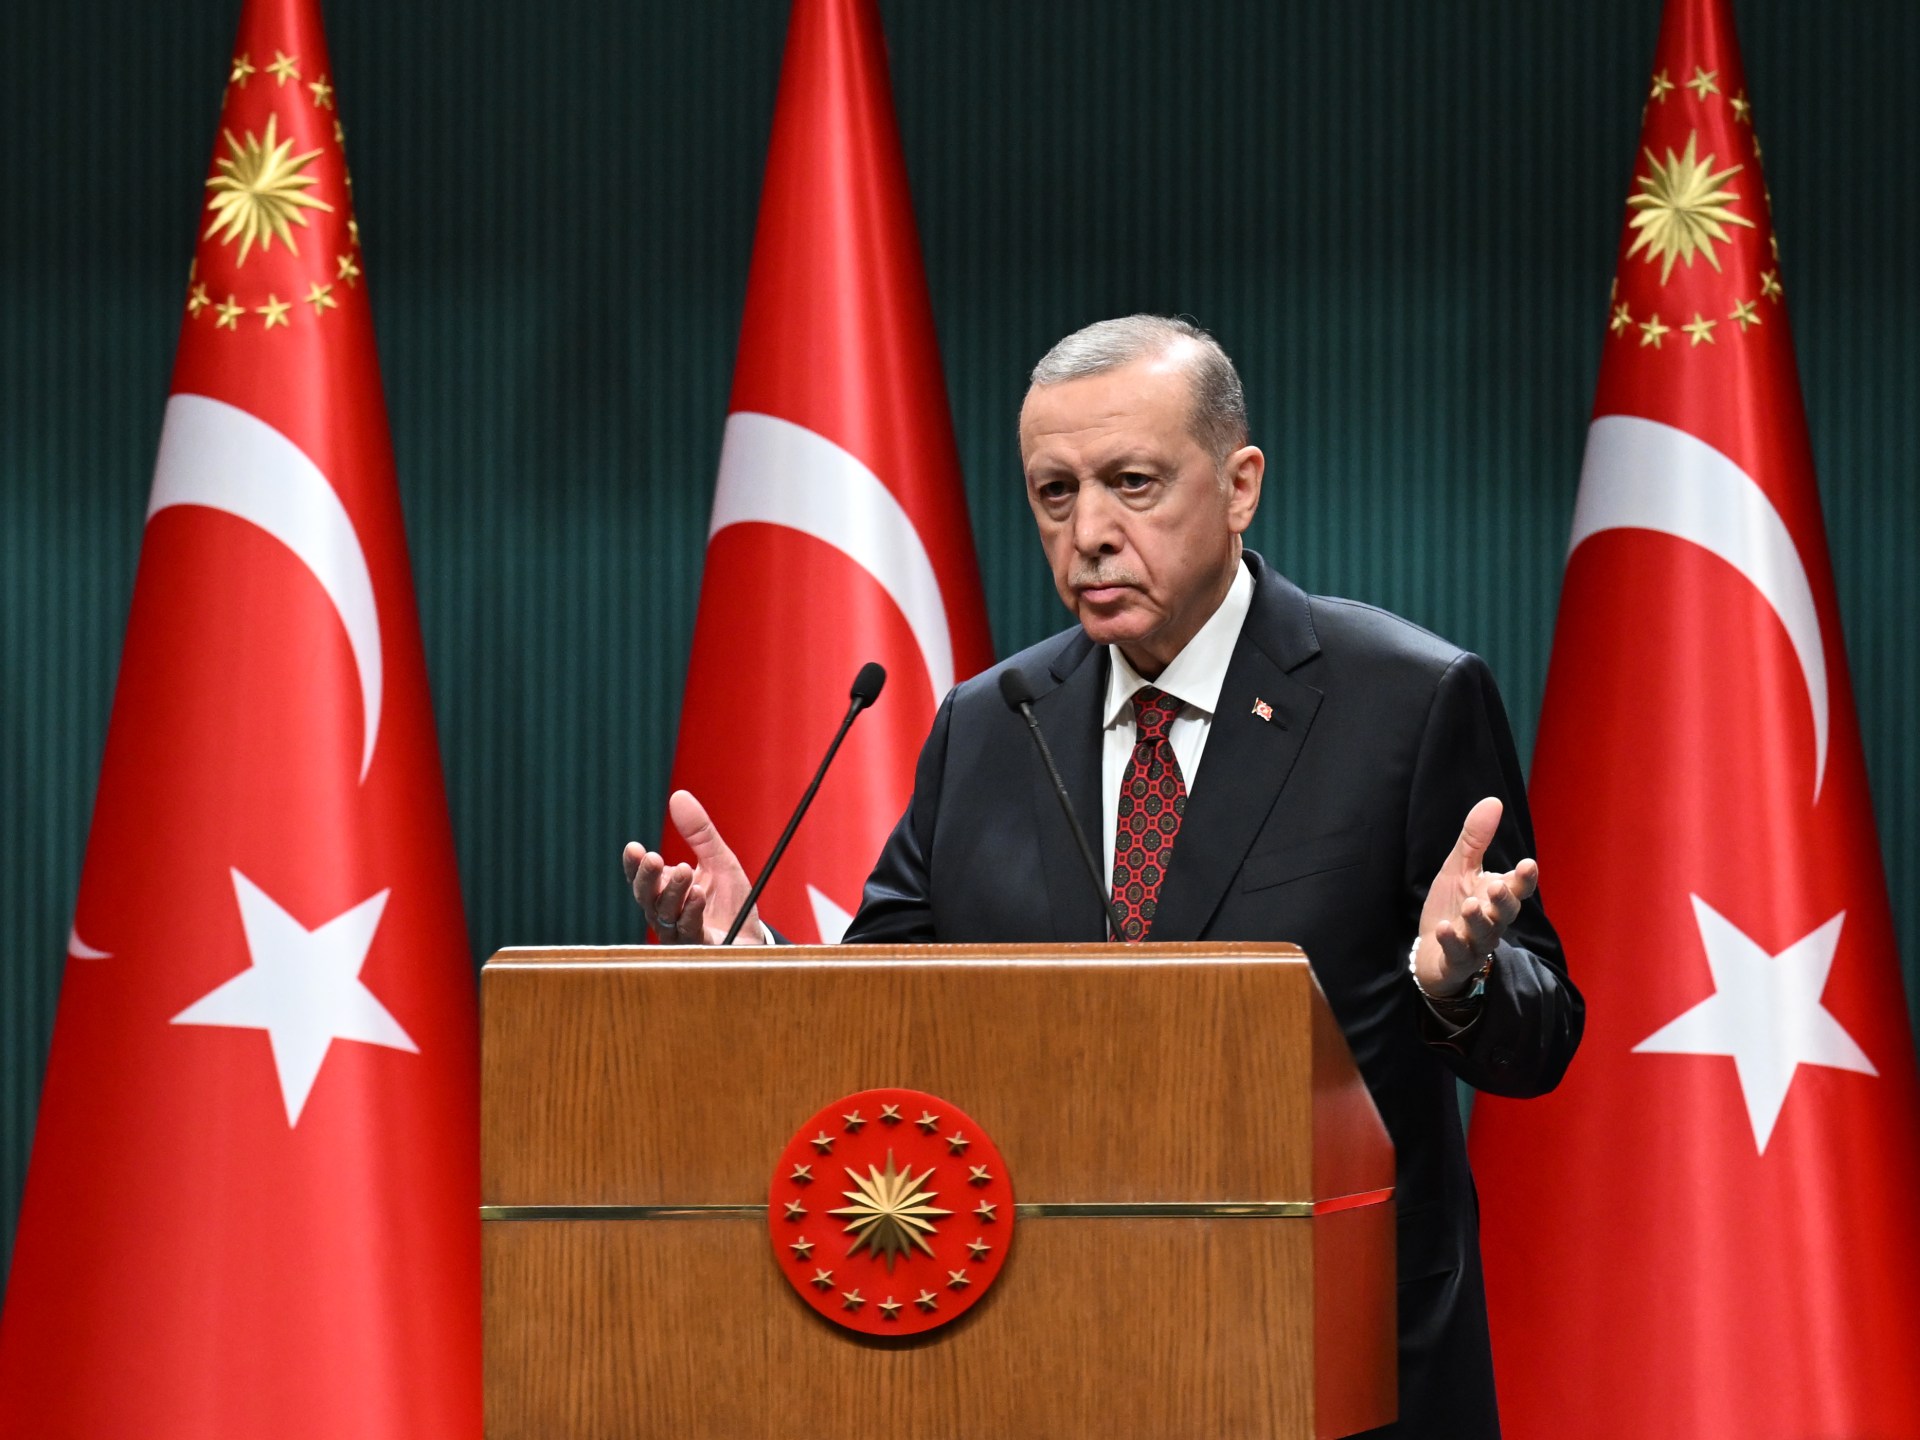 أردوغان يرشح قوميا تركيا لرئاسة بلدية أنقرة | أخبار – البوكس نيوز